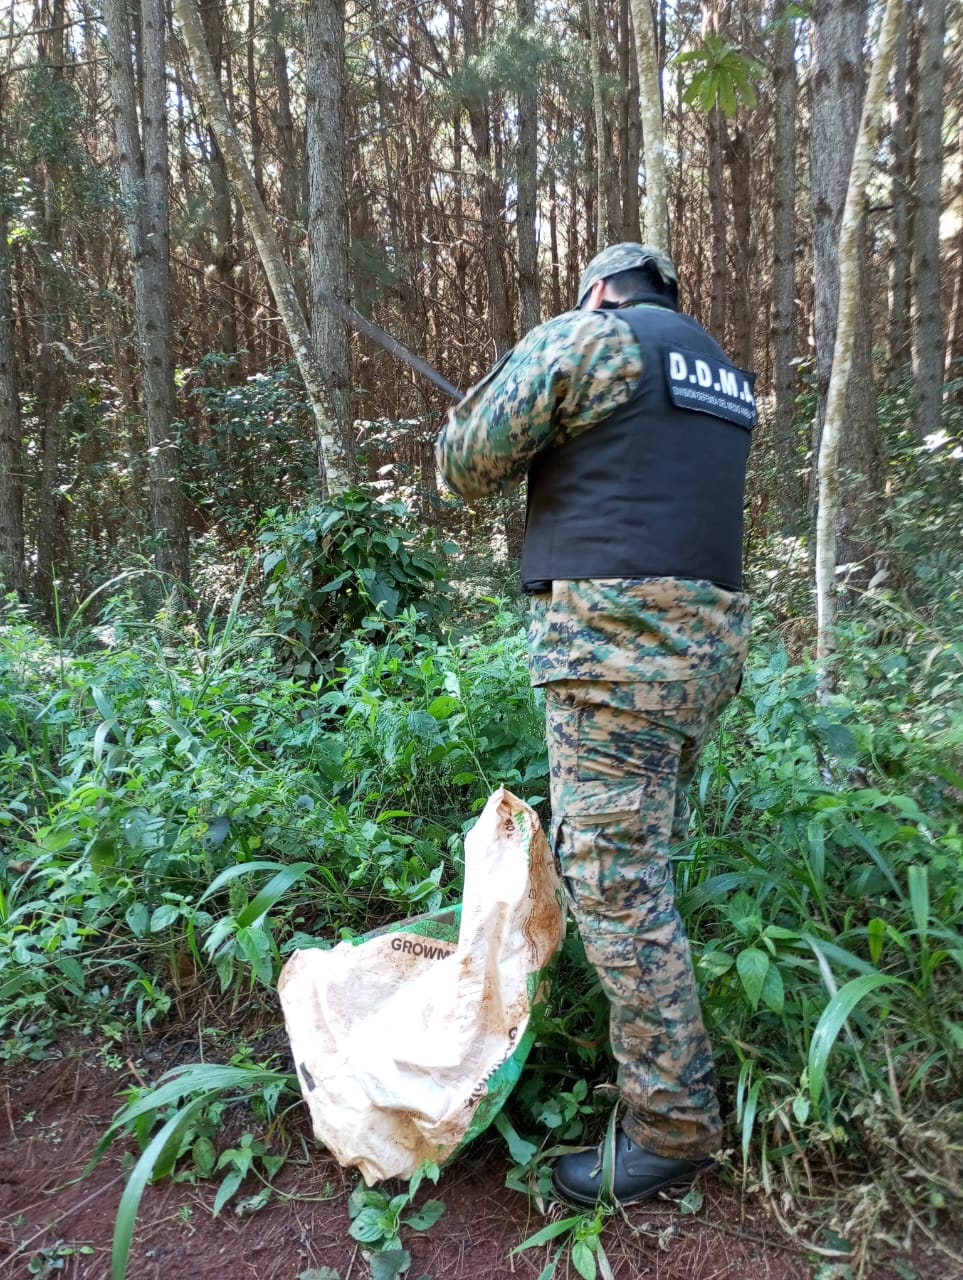 En operativos rurales recuperaron yerba robada, secuestraron un arma para caza ilegal y destruyeron redes de pesca imagen-8